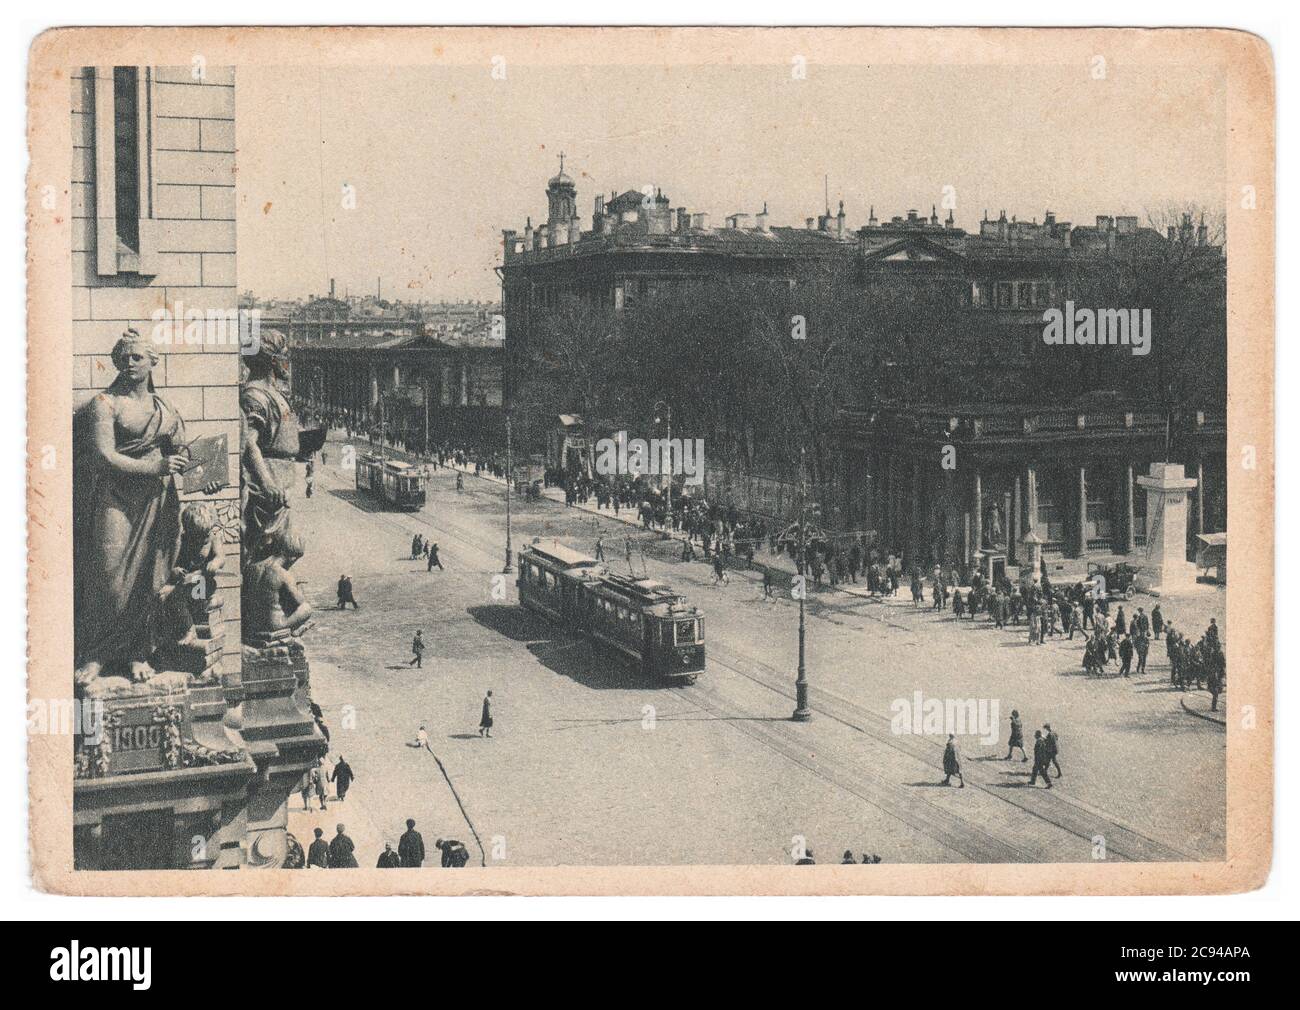 RUSSIE, URSS - VERS 1929 : une carte postale monochrome montre l'avenue du 25 octobre à Leningrad Banque D'Images